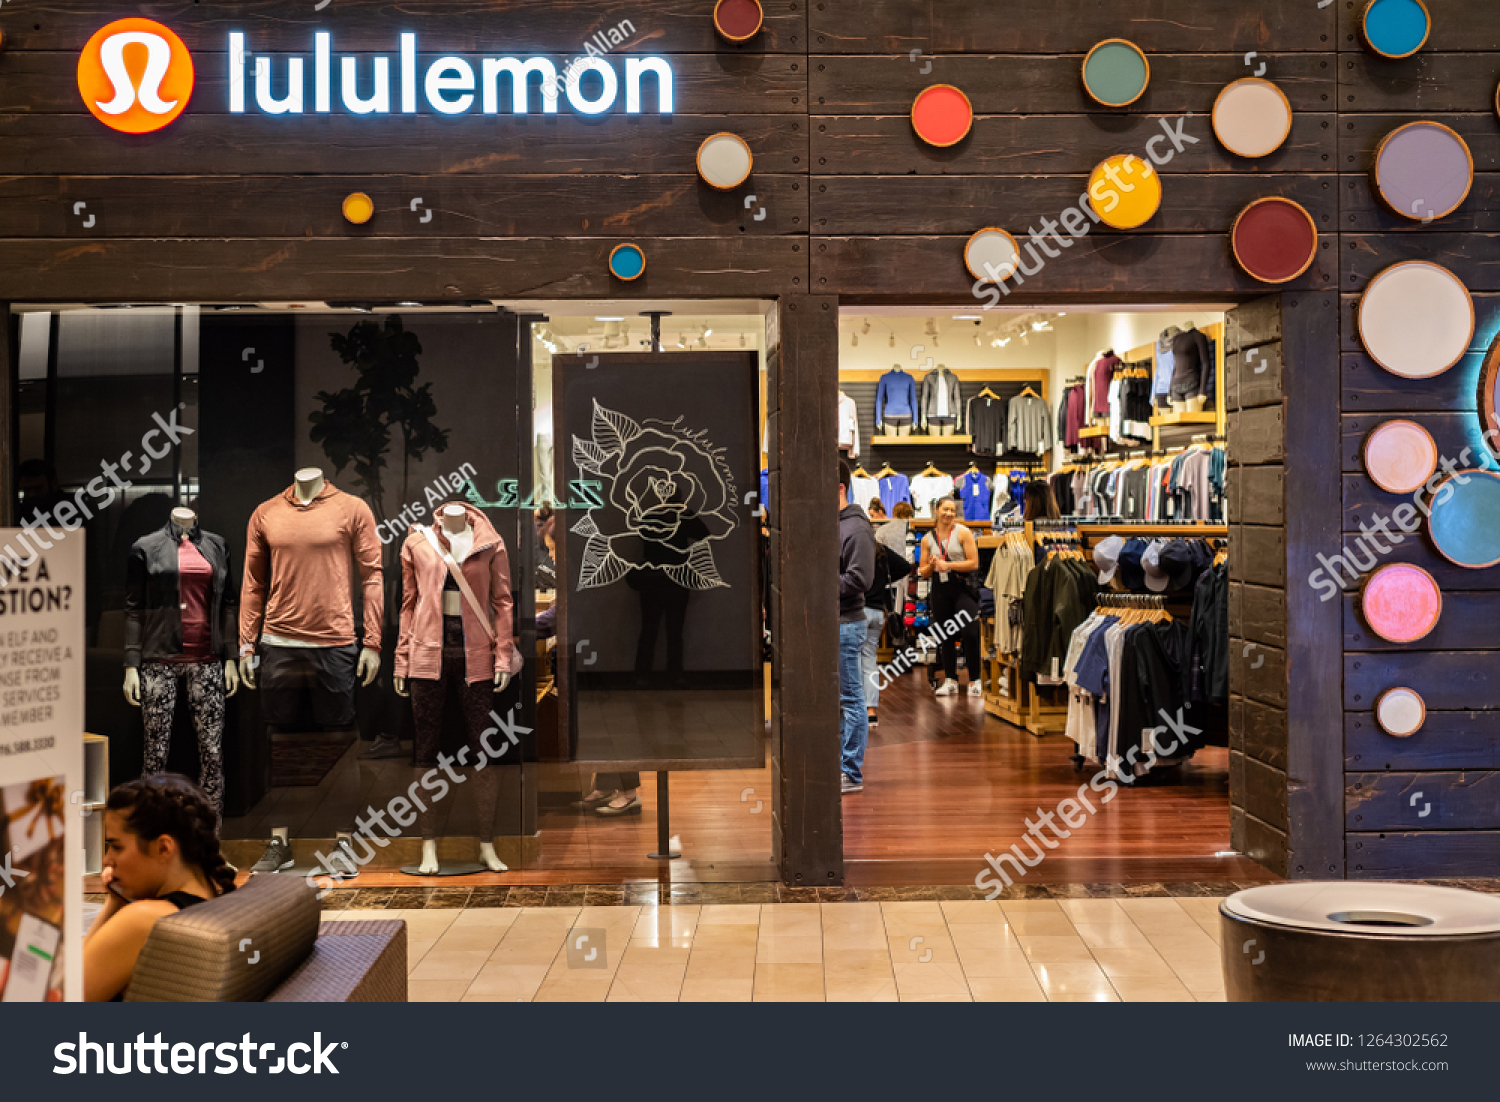 lululemon galleria hours